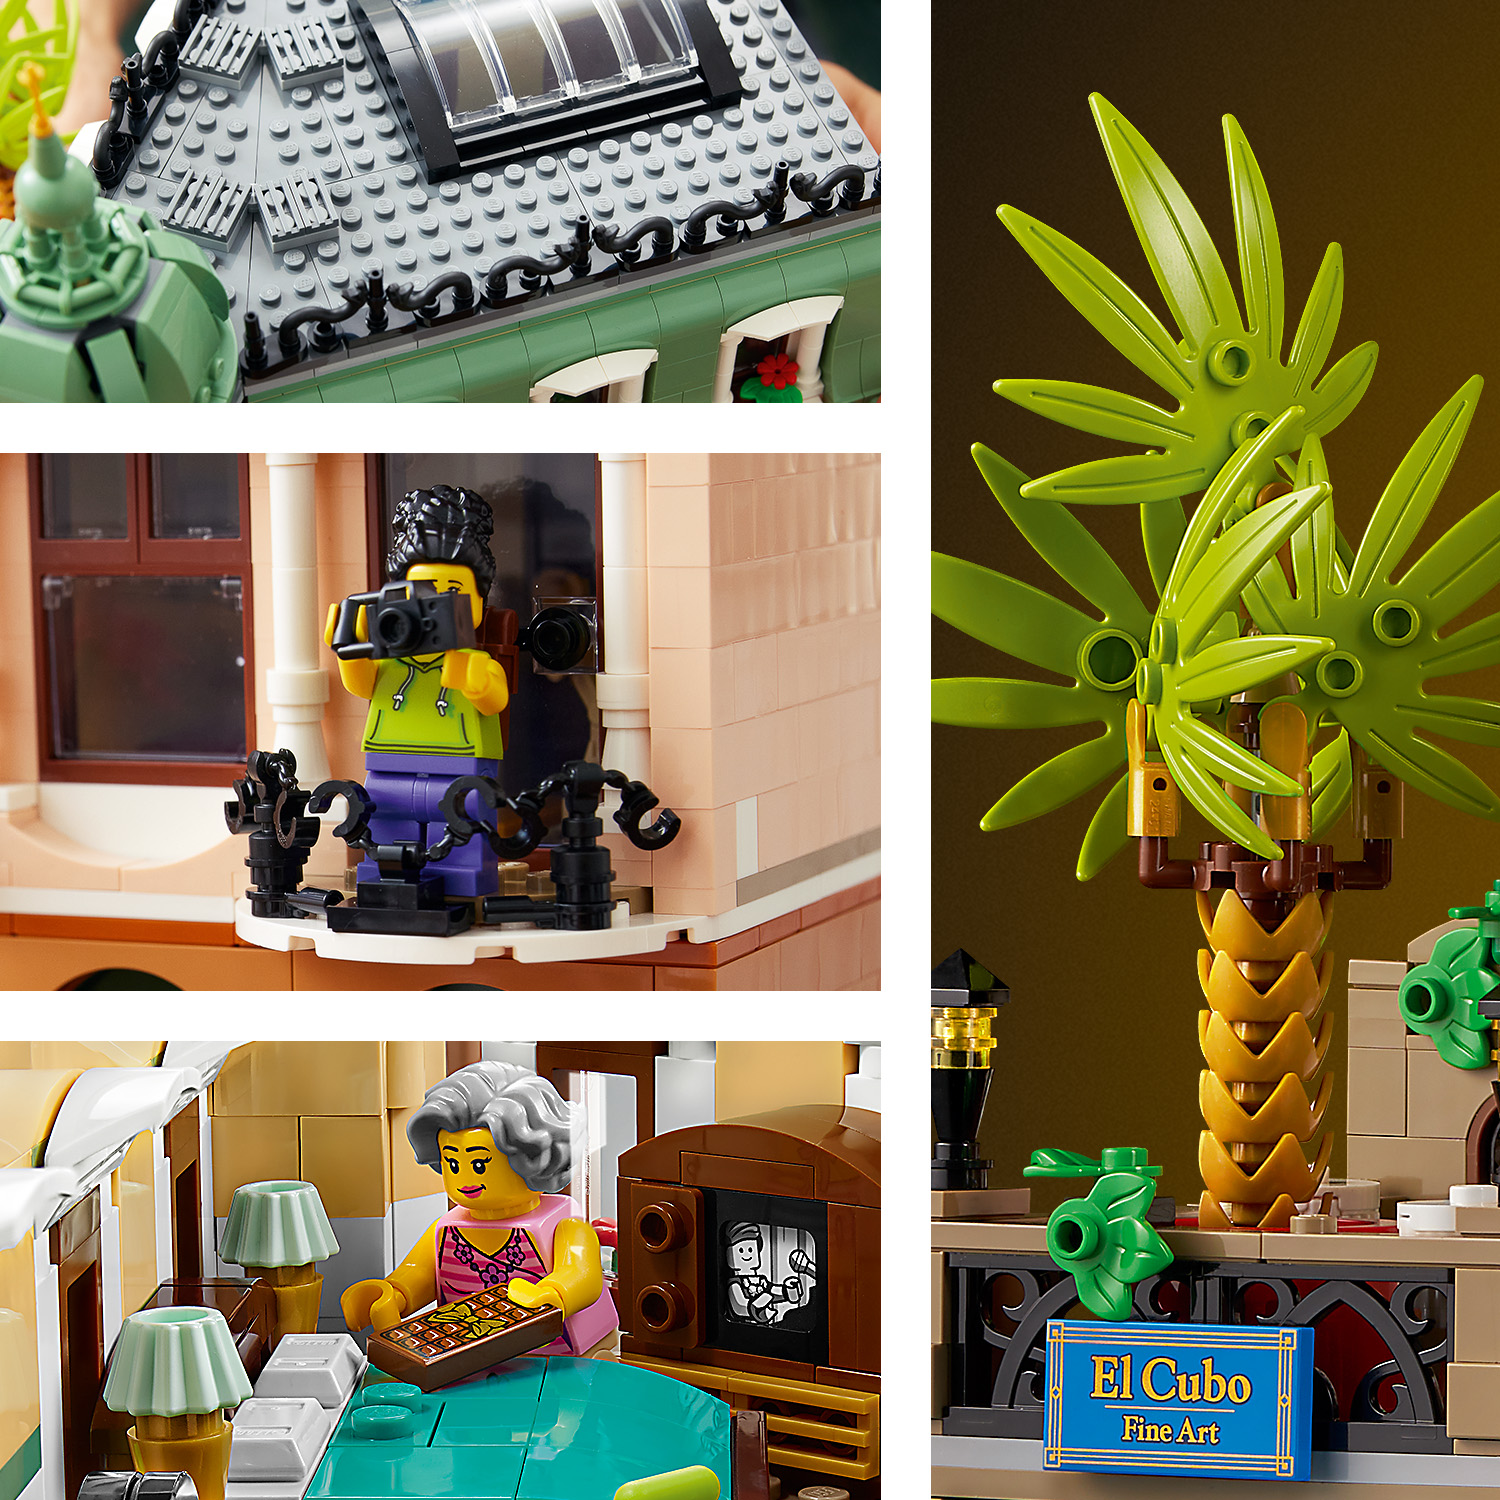 楽天市場流通限定商品 レゴ ブティックホテル     レゴ